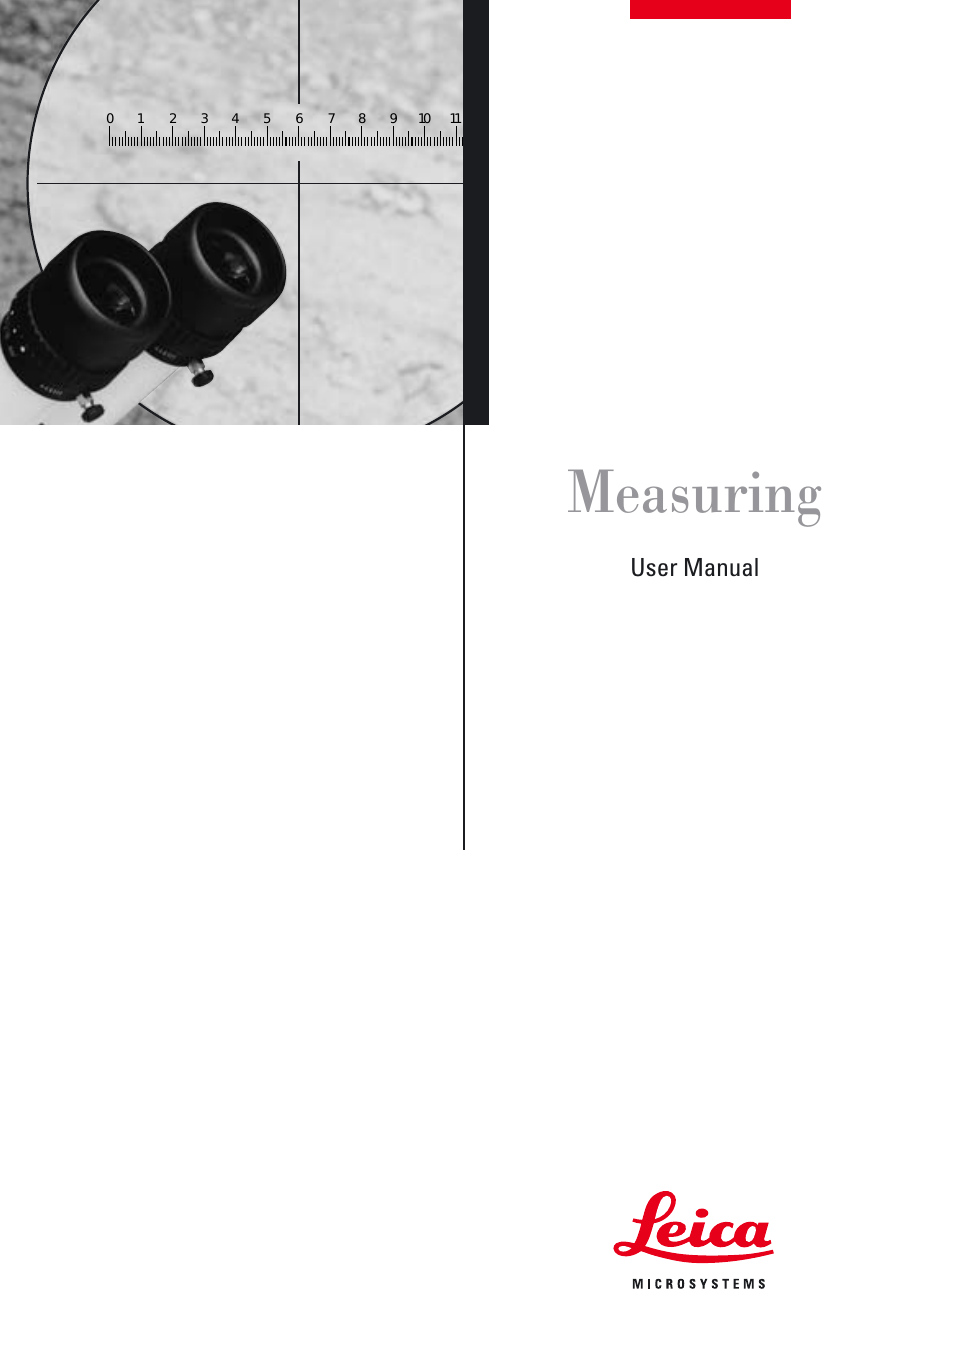 M50 Measuring